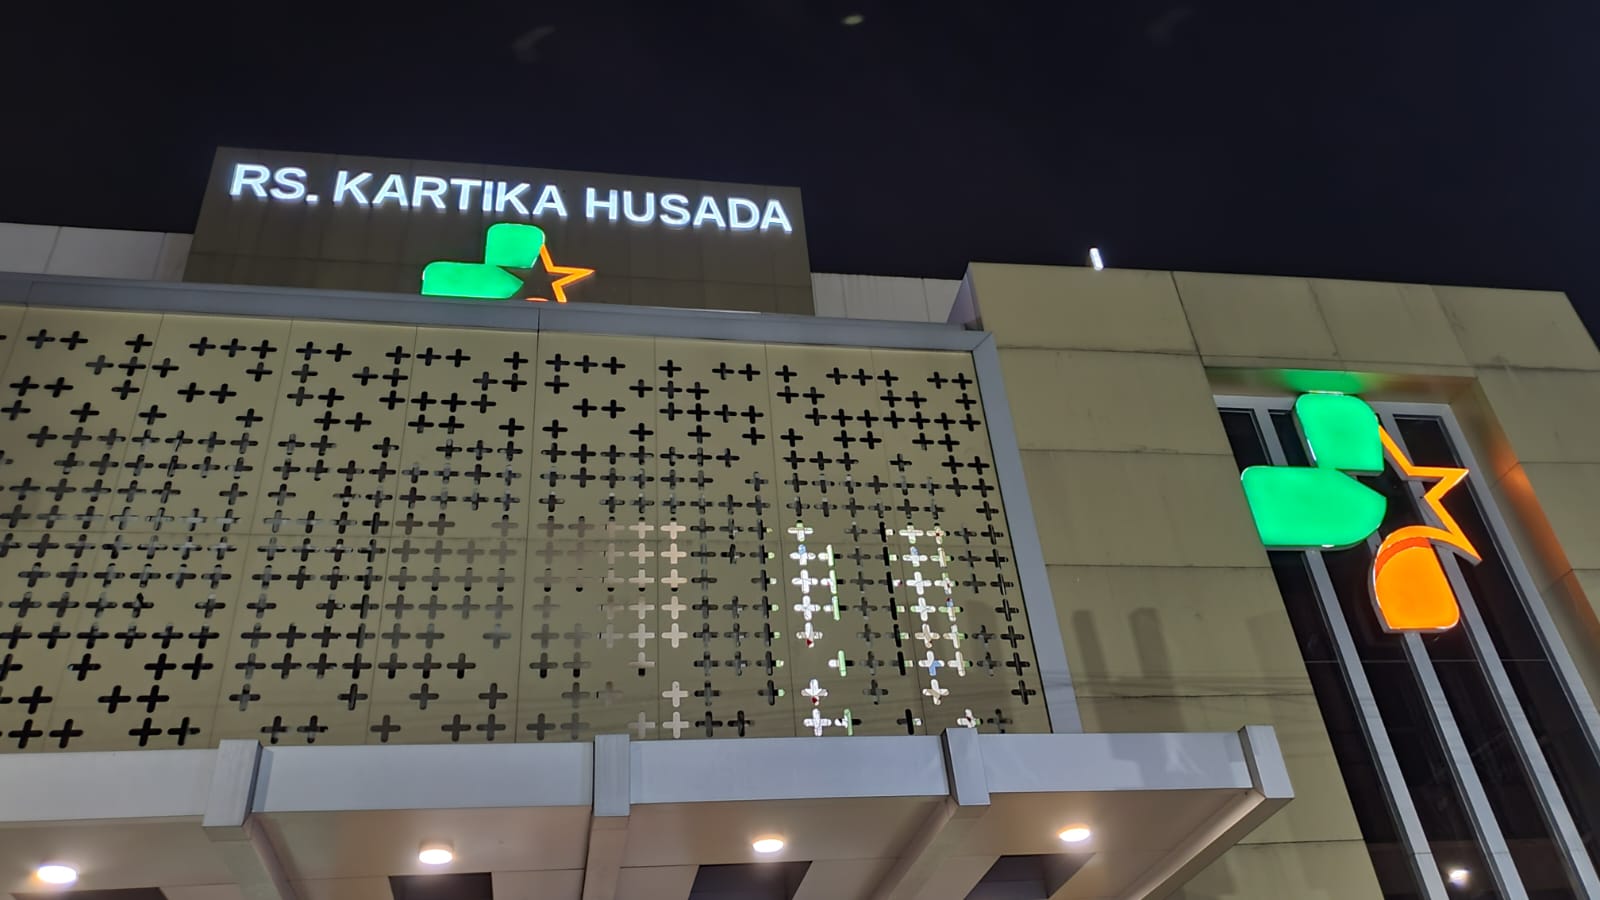 Alvaro Meninggal Akibat Malpraktik Dokter RS Kartika Husada Kota Bekasi, Polda Metro Lakukan Penyelidikan